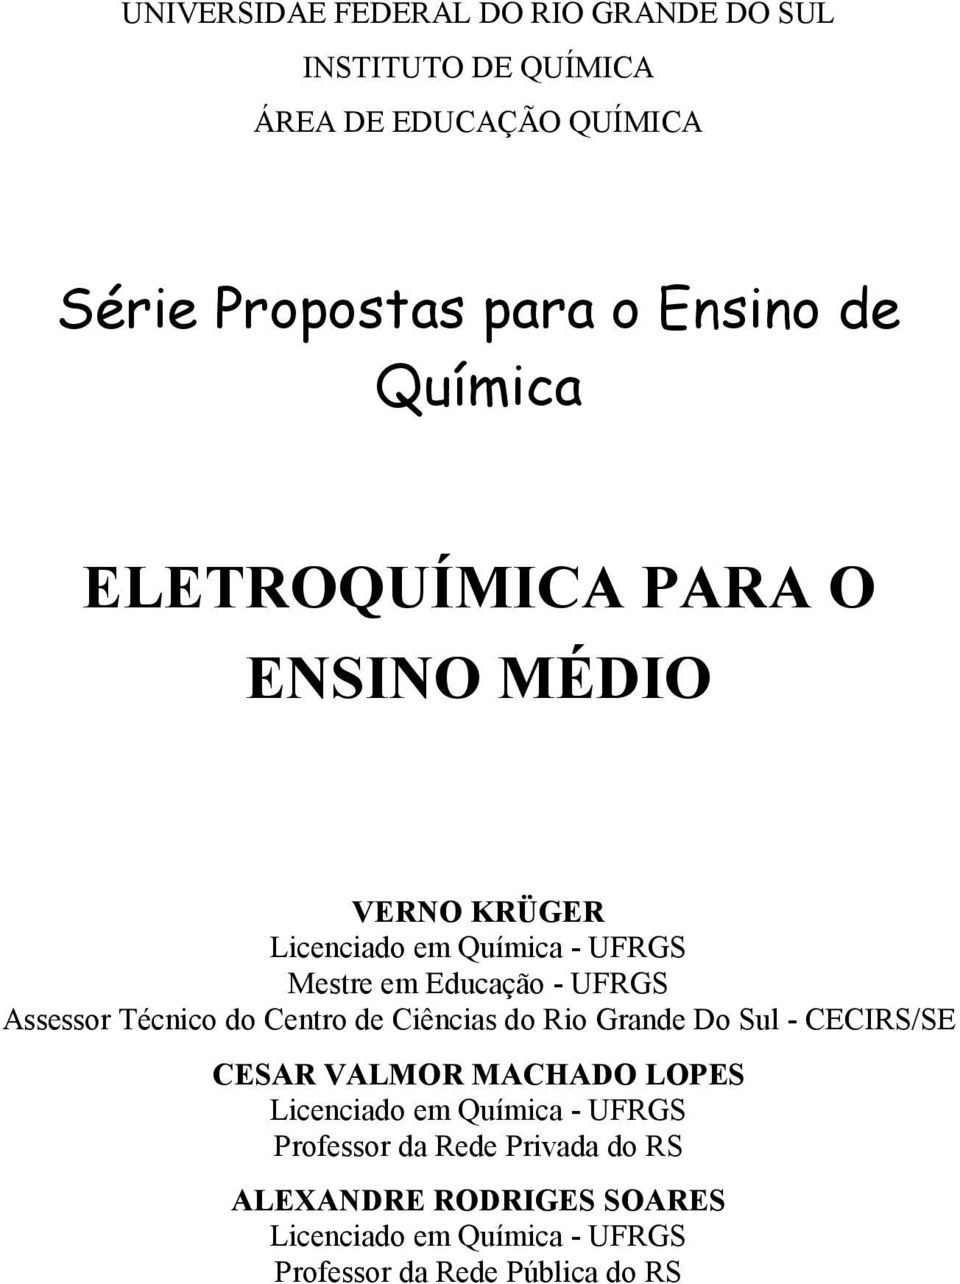 Assessor Técnico do Centro de Ciências do Rio Grande Do Sul - CECIRS/SE CESAR VALMOR MACHADO LOPES Licenciado em